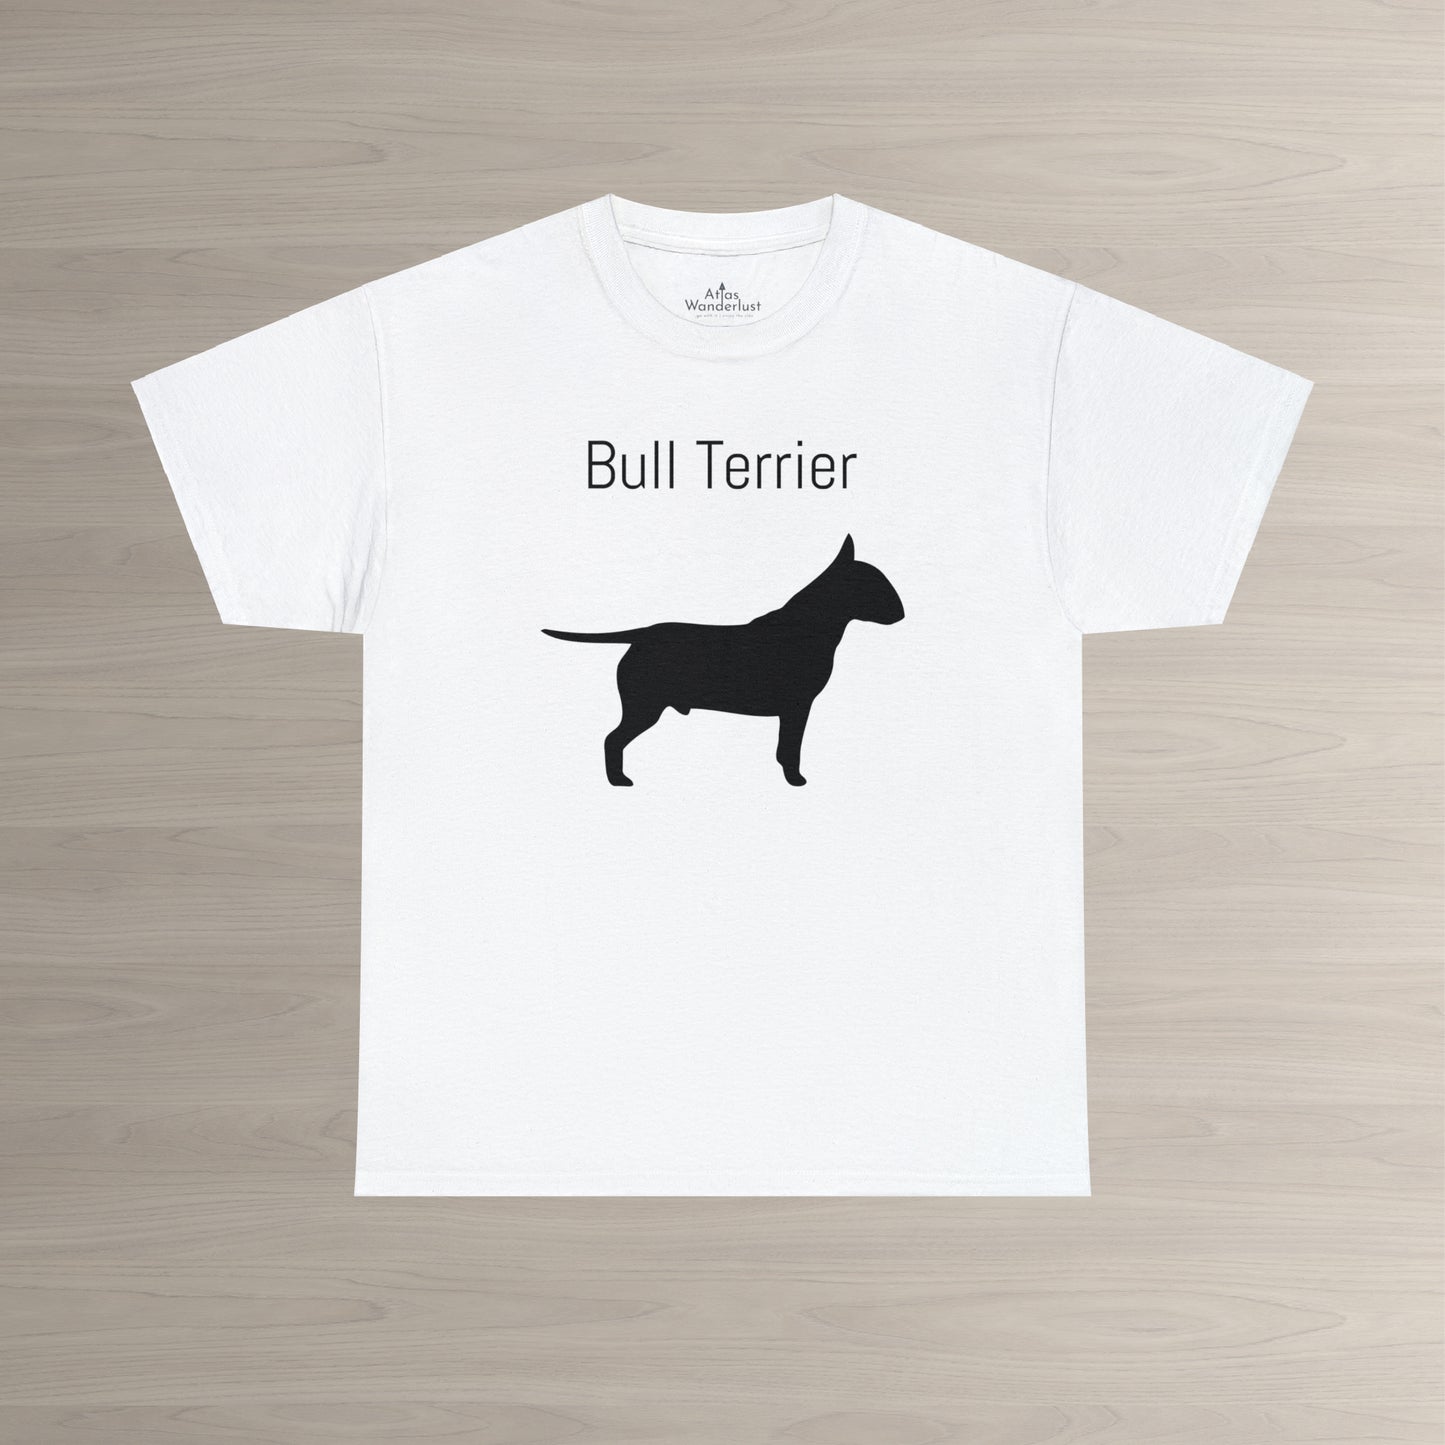 Bull Terrier T-Shirt, Bully Silhouette Tee